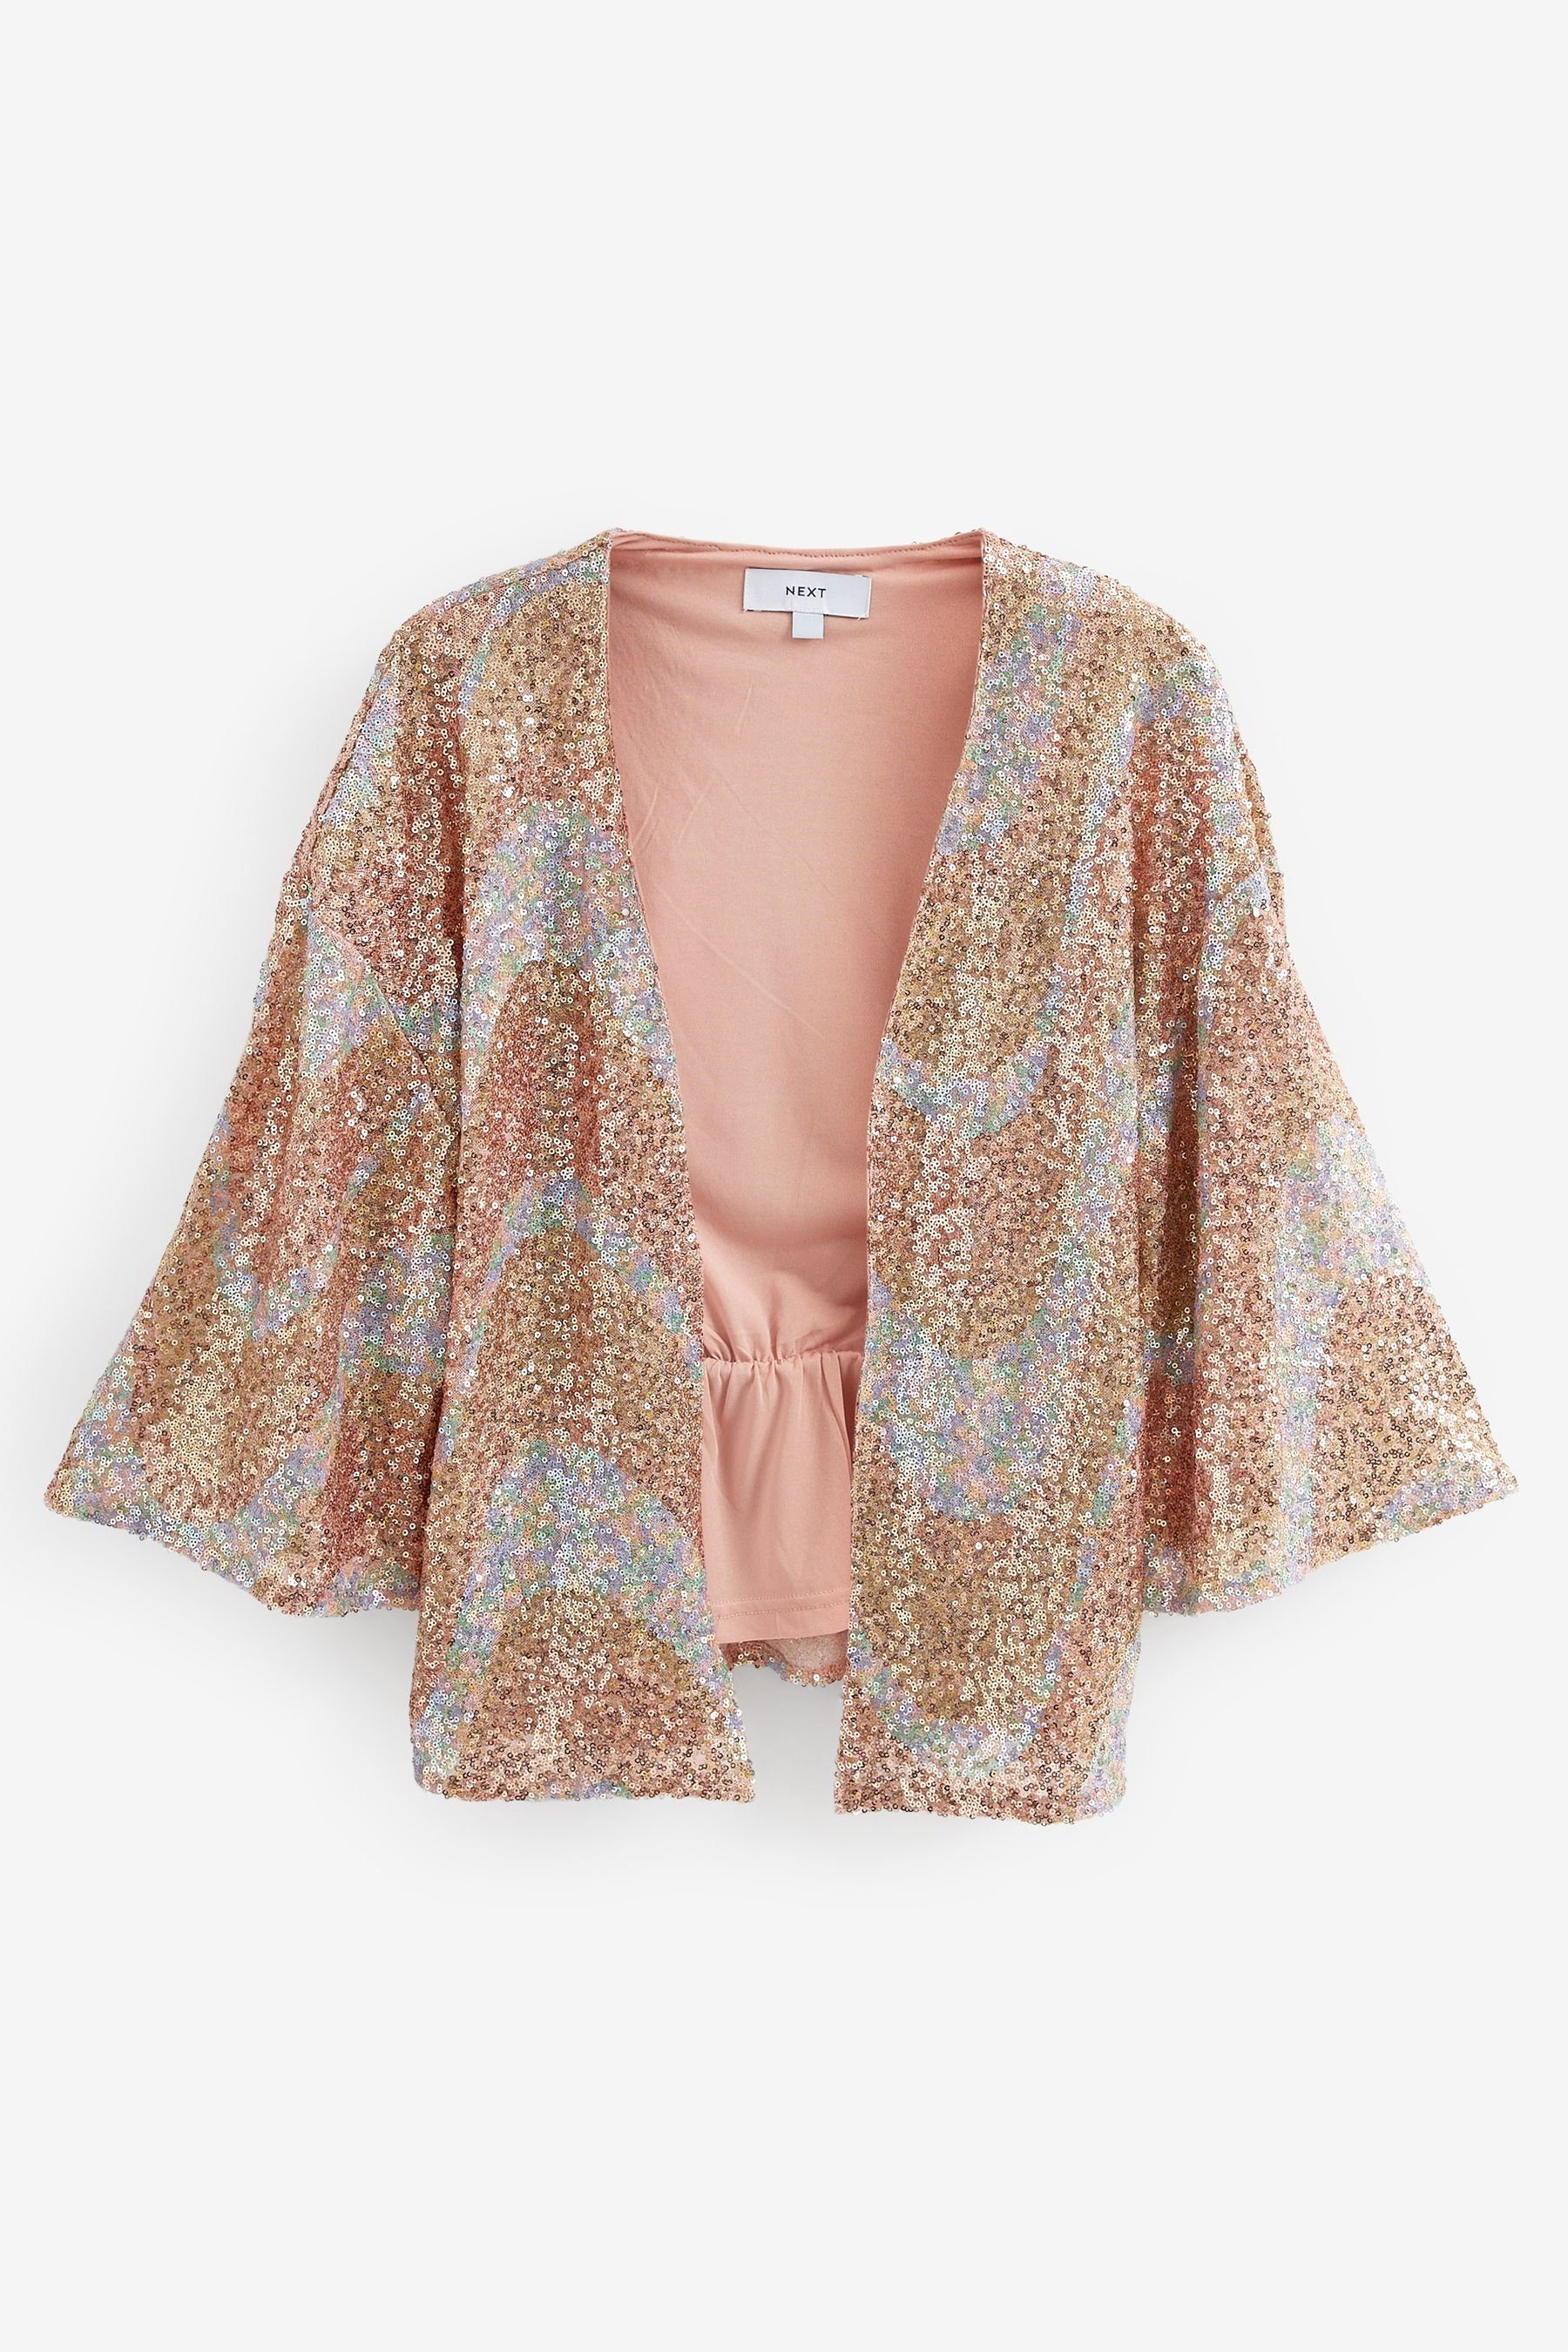 Next Kimono Sommerkimono mit Pailletten, Polyester, Elasthan, Aktuelles  Design aus England